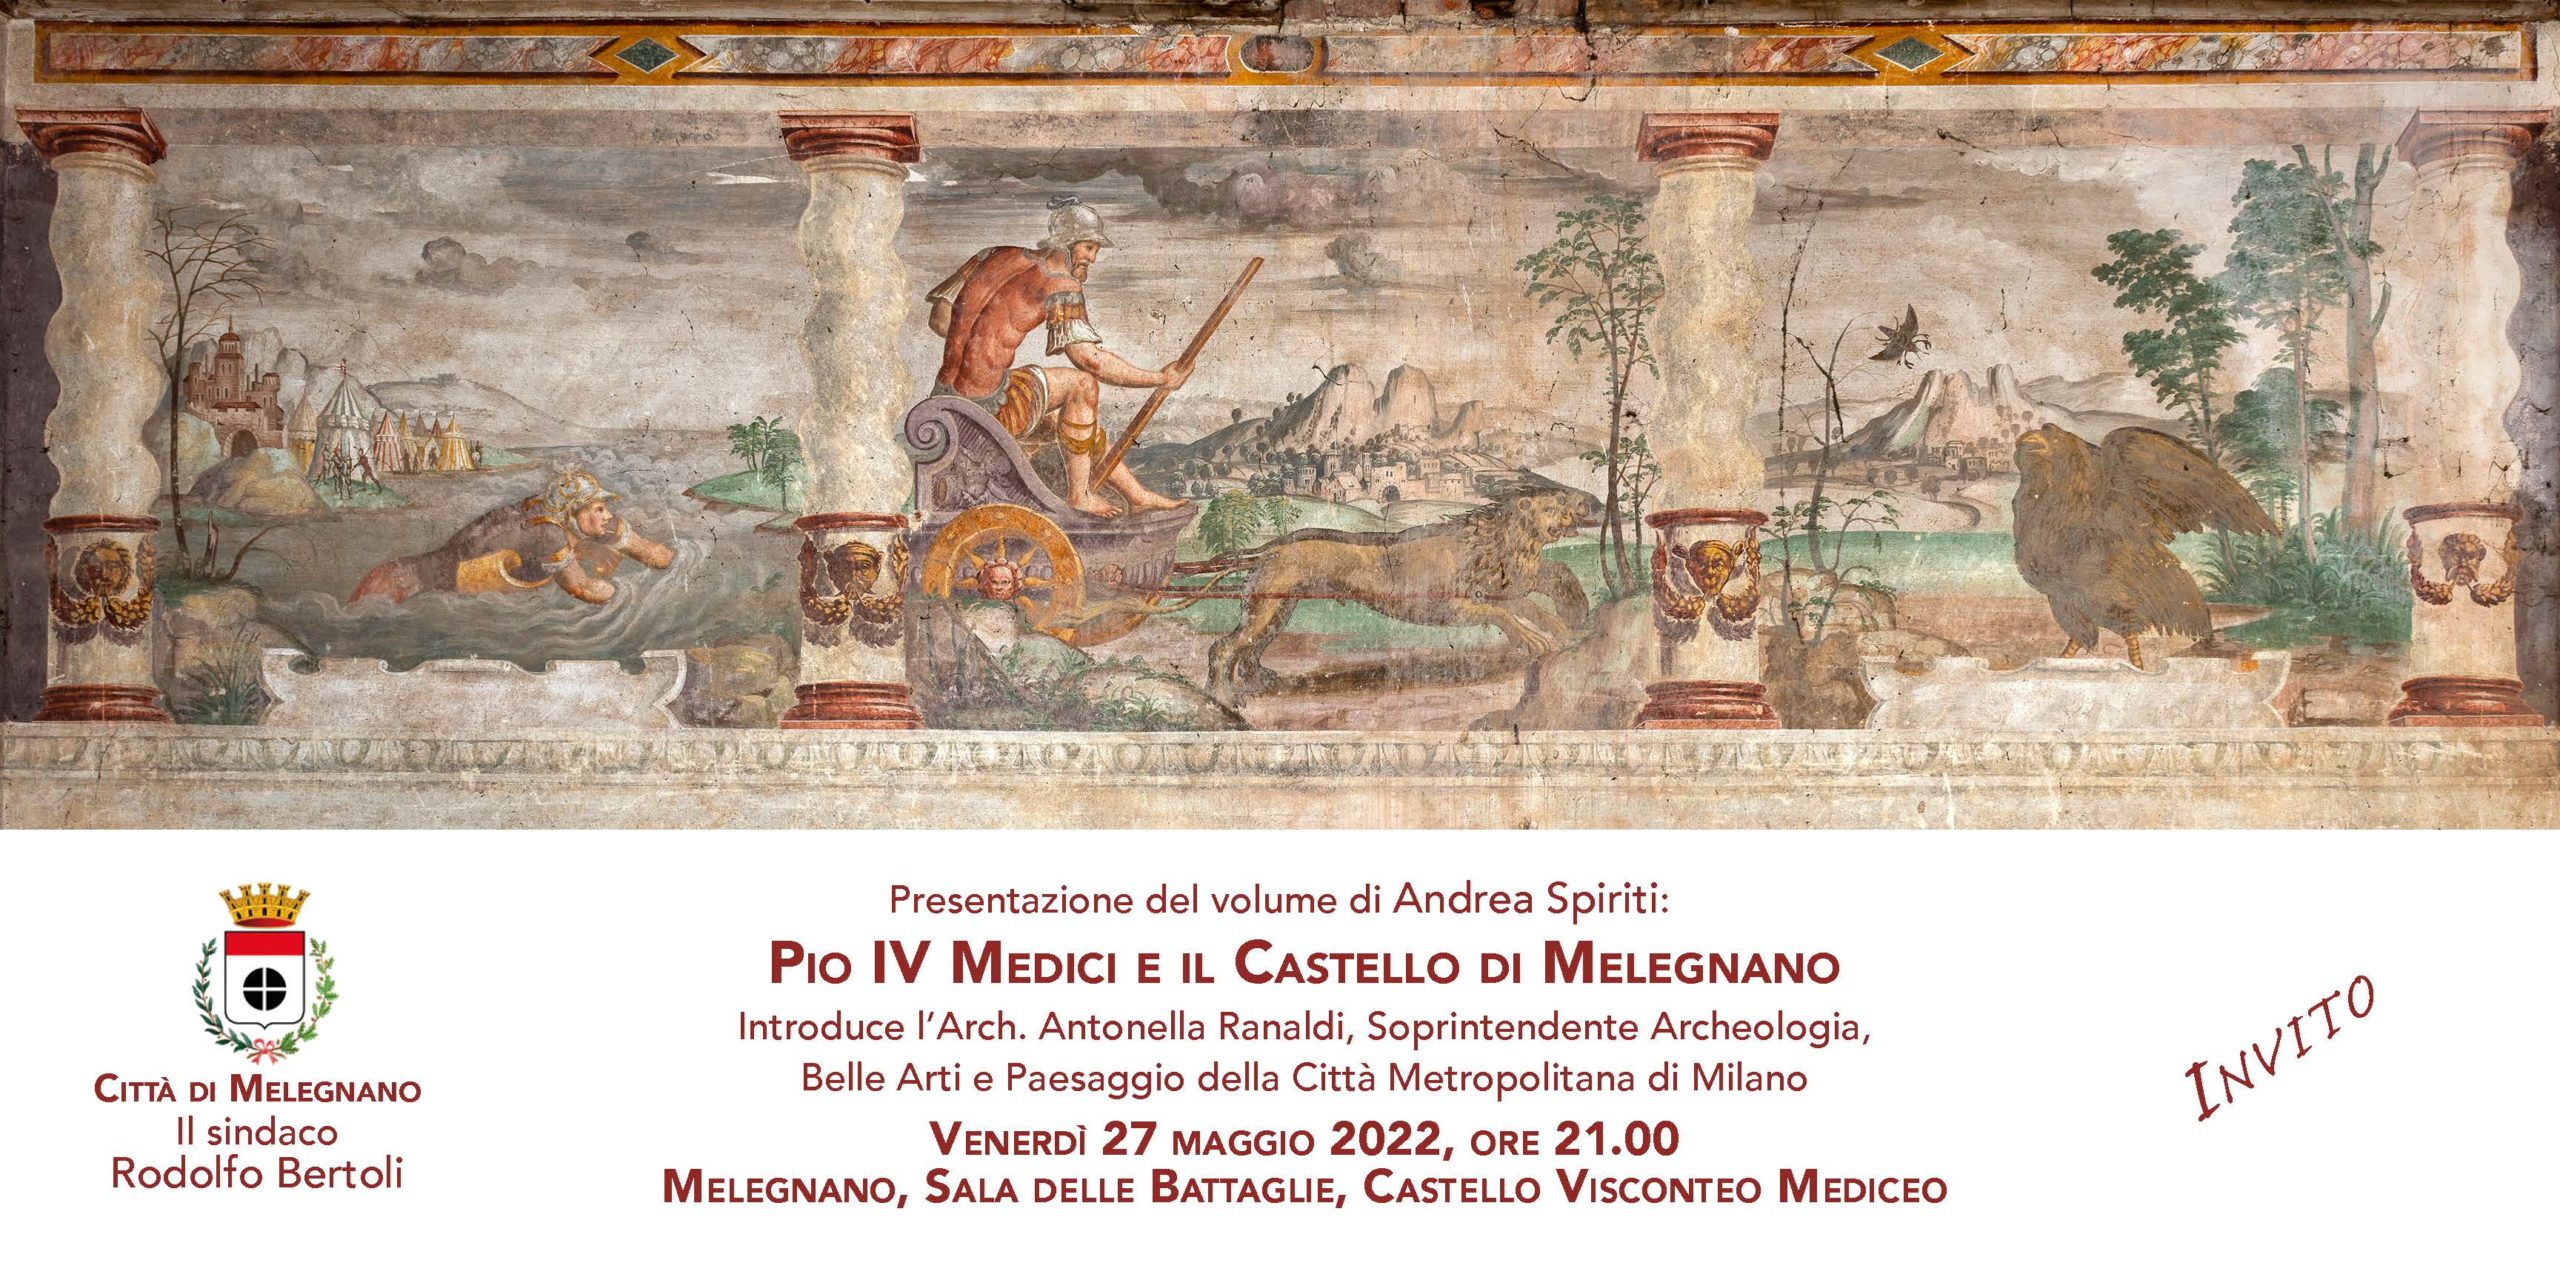 Pio IV Medici e il Castello di Melegnano – Presentazione del volume di Andrea Spiriti – 27 maggio 2022 – Melegnano